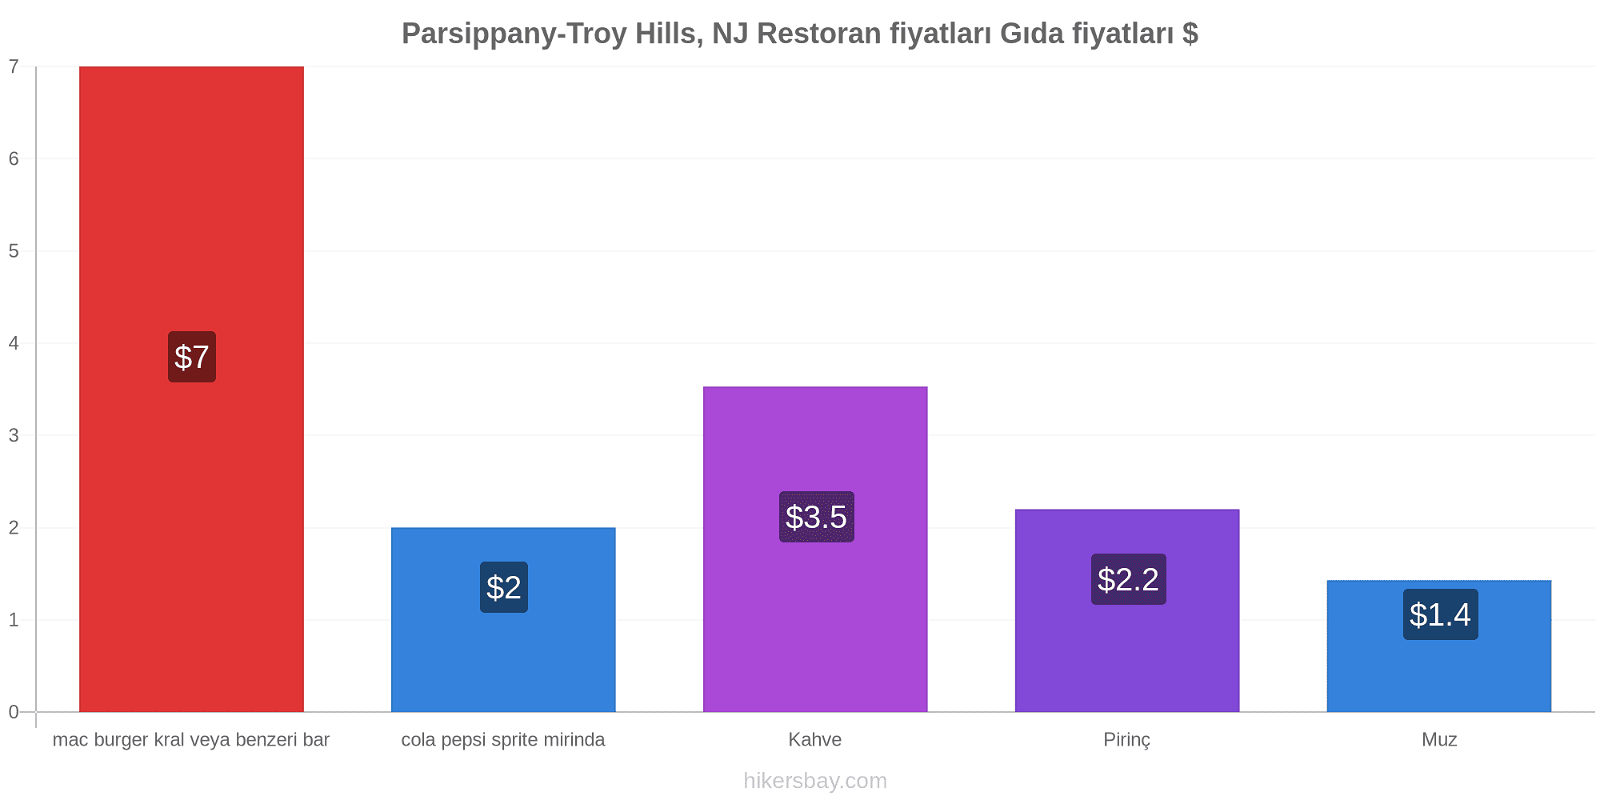 Parsippany-Troy Hills, NJ fiyat değişiklikleri hikersbay.com